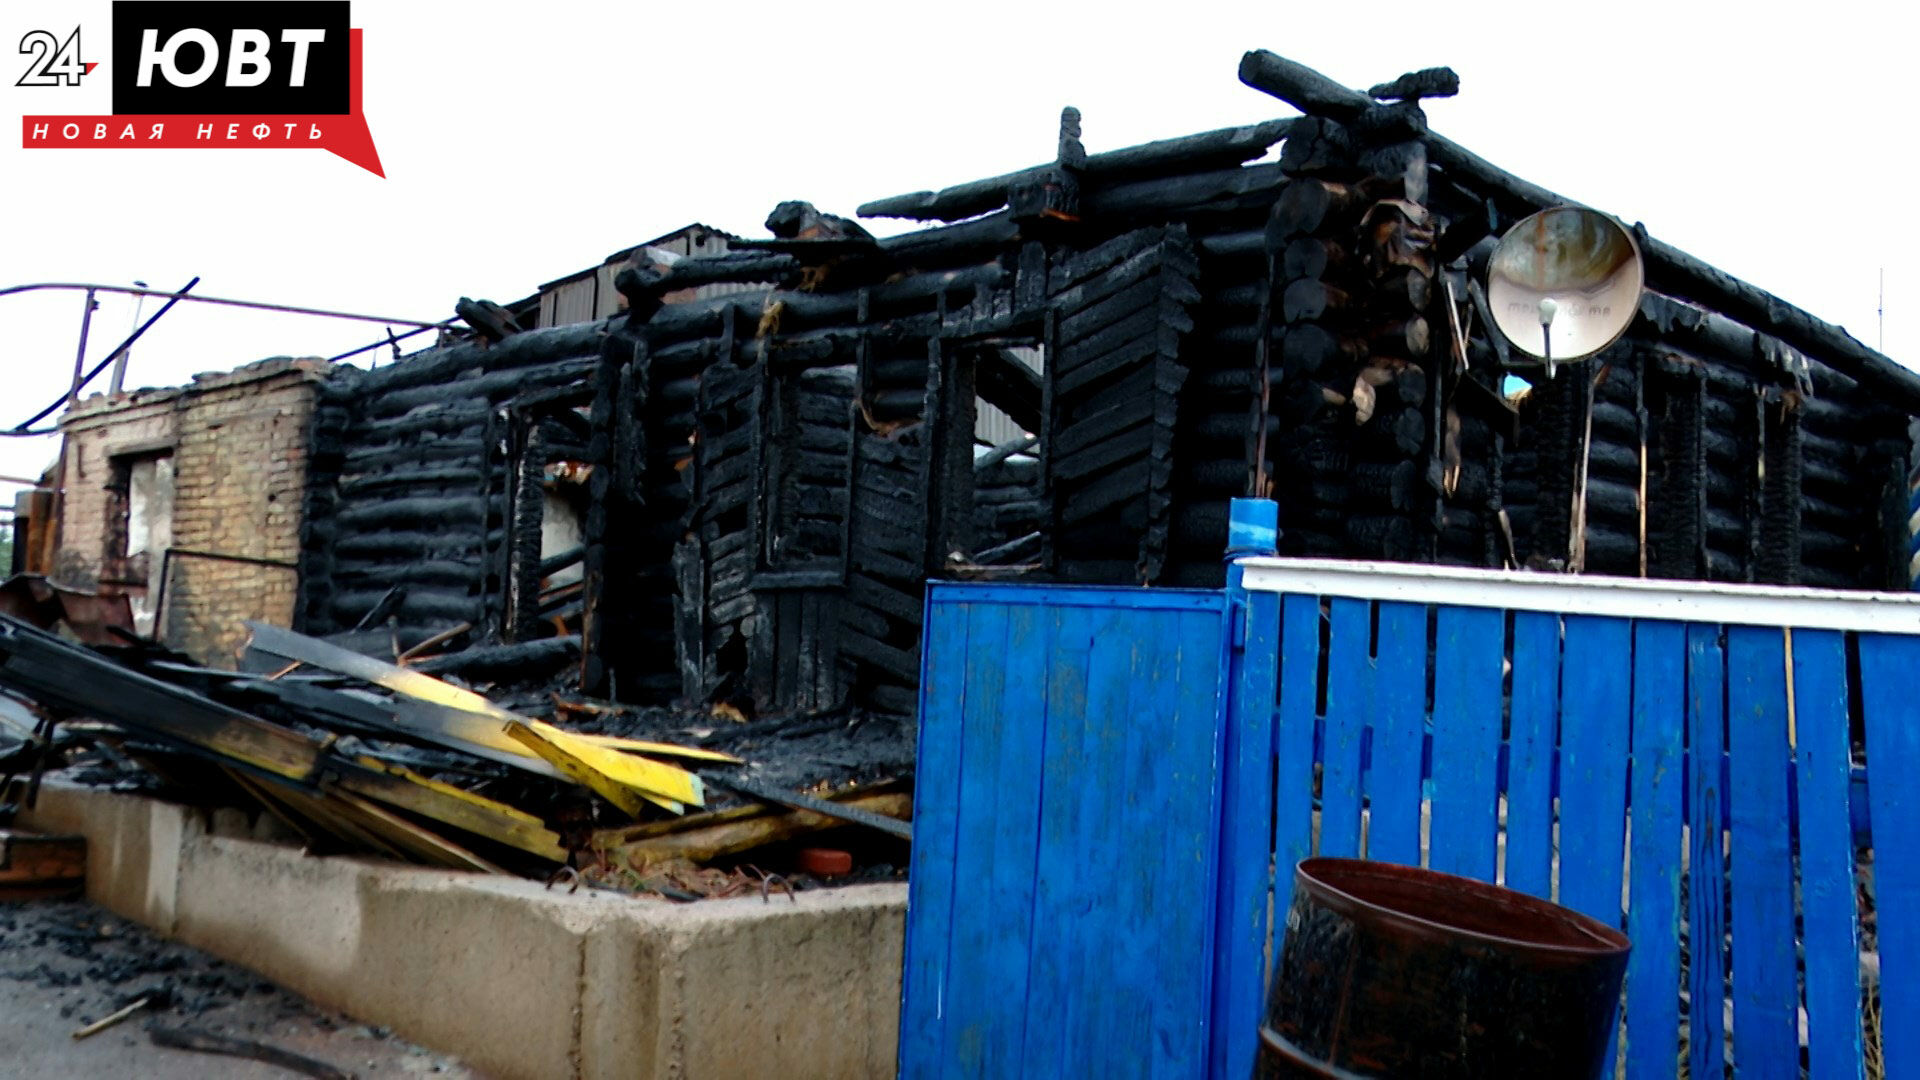 Семье нужна помощь: огонь уничтожил дом пенсионеров из Нового Каширово